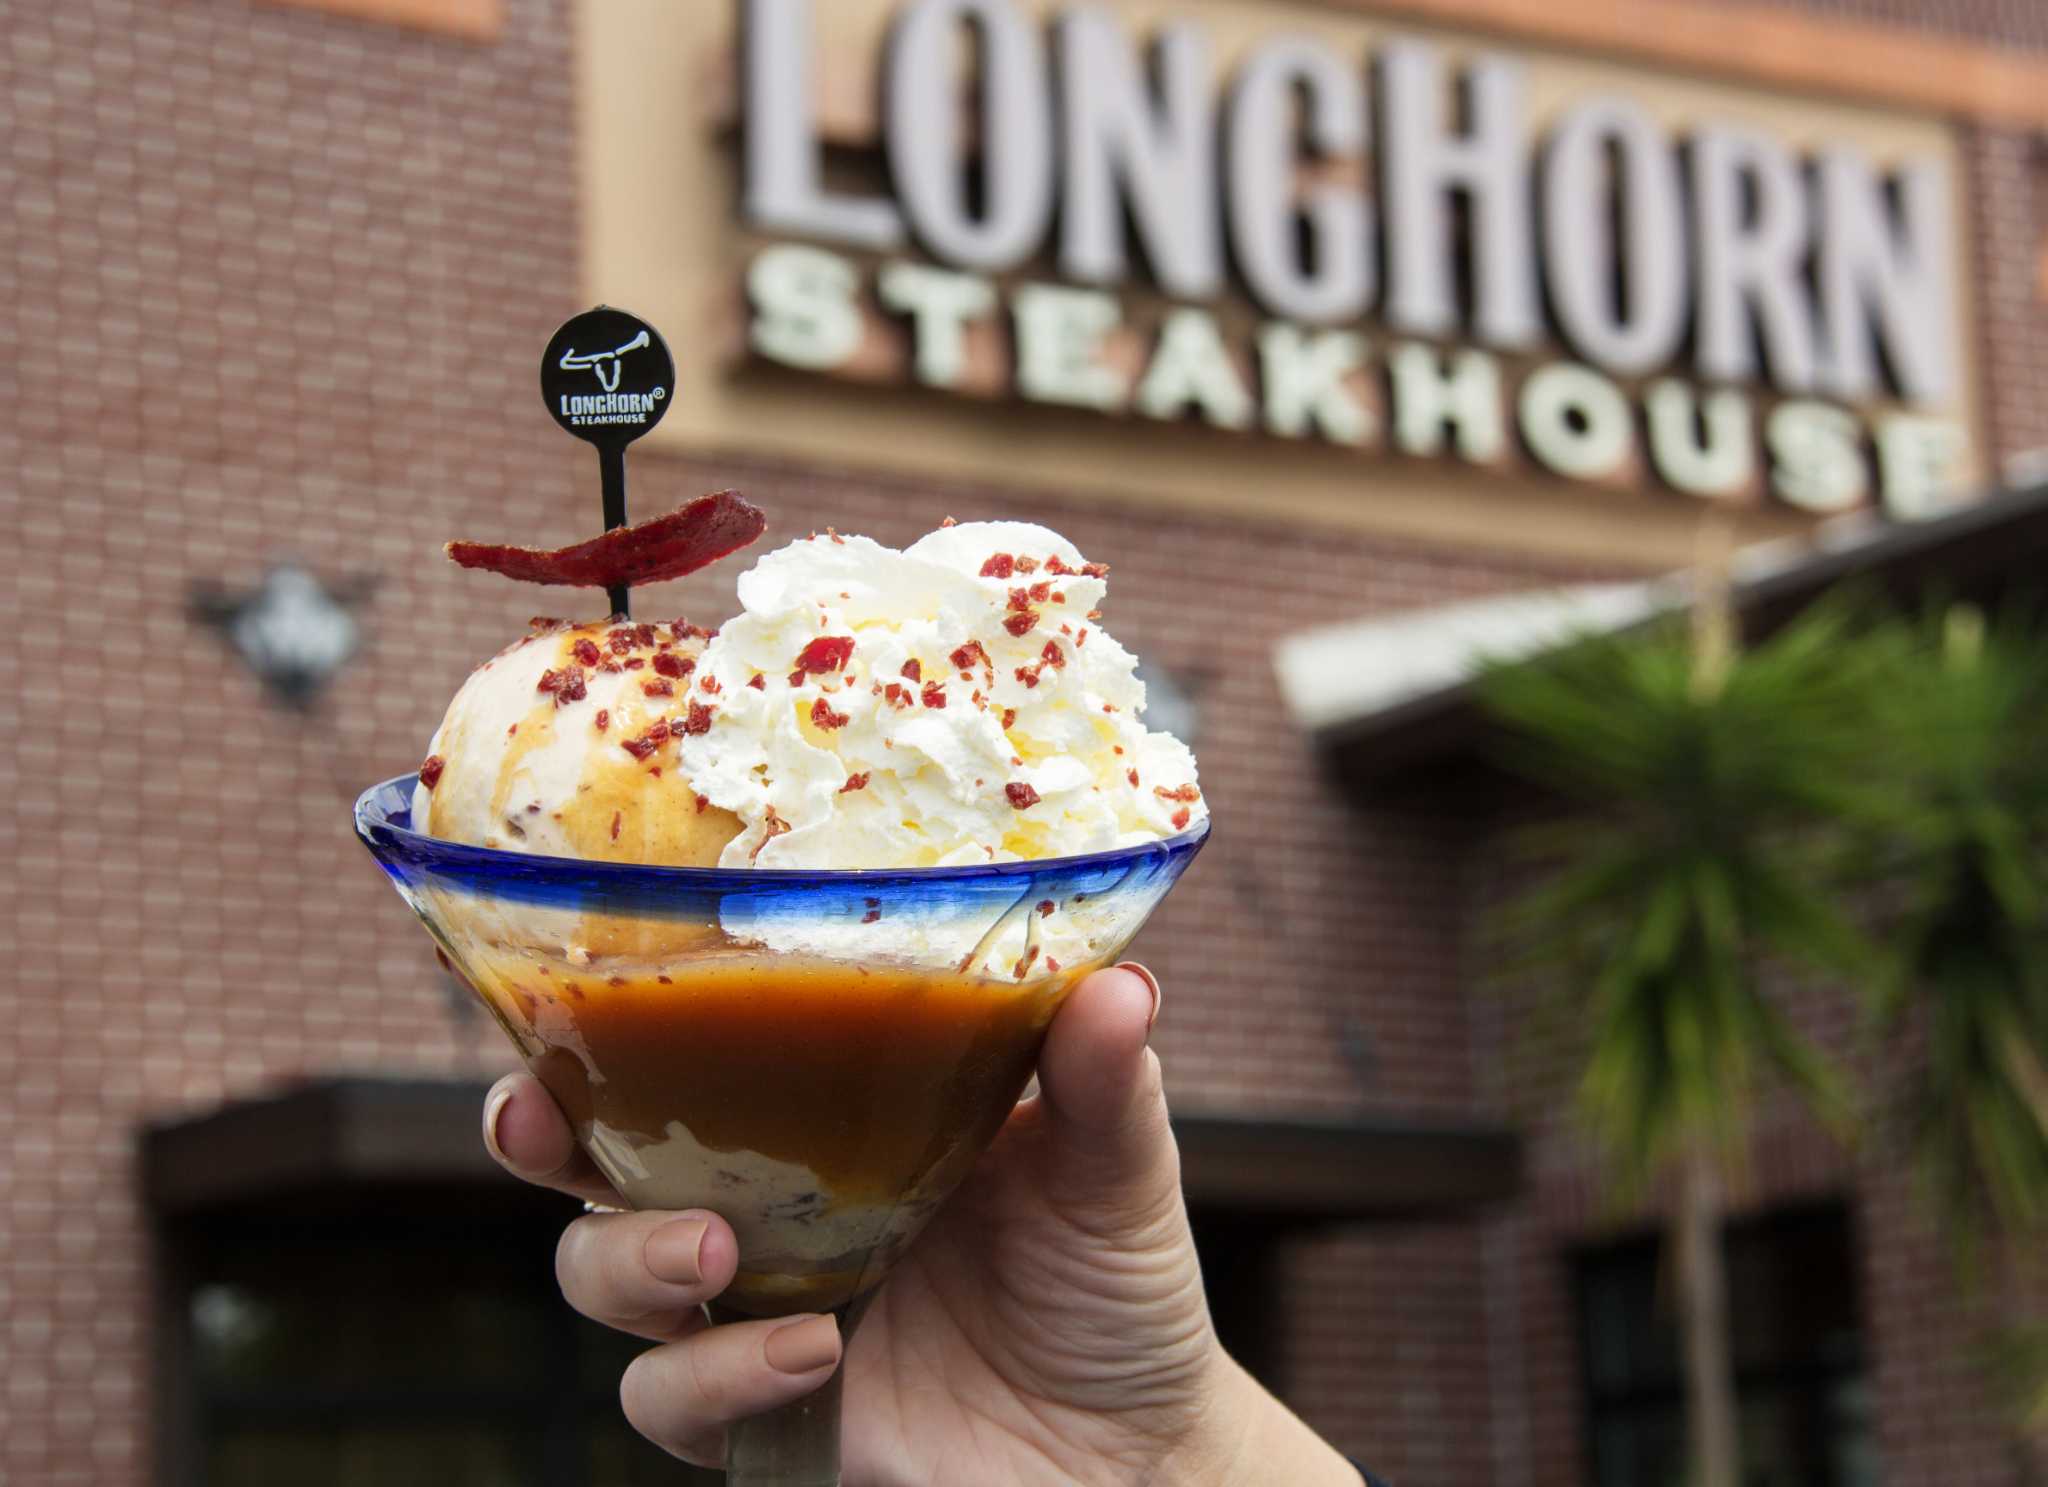 LongHorn Steakhouses offer steak for dessert